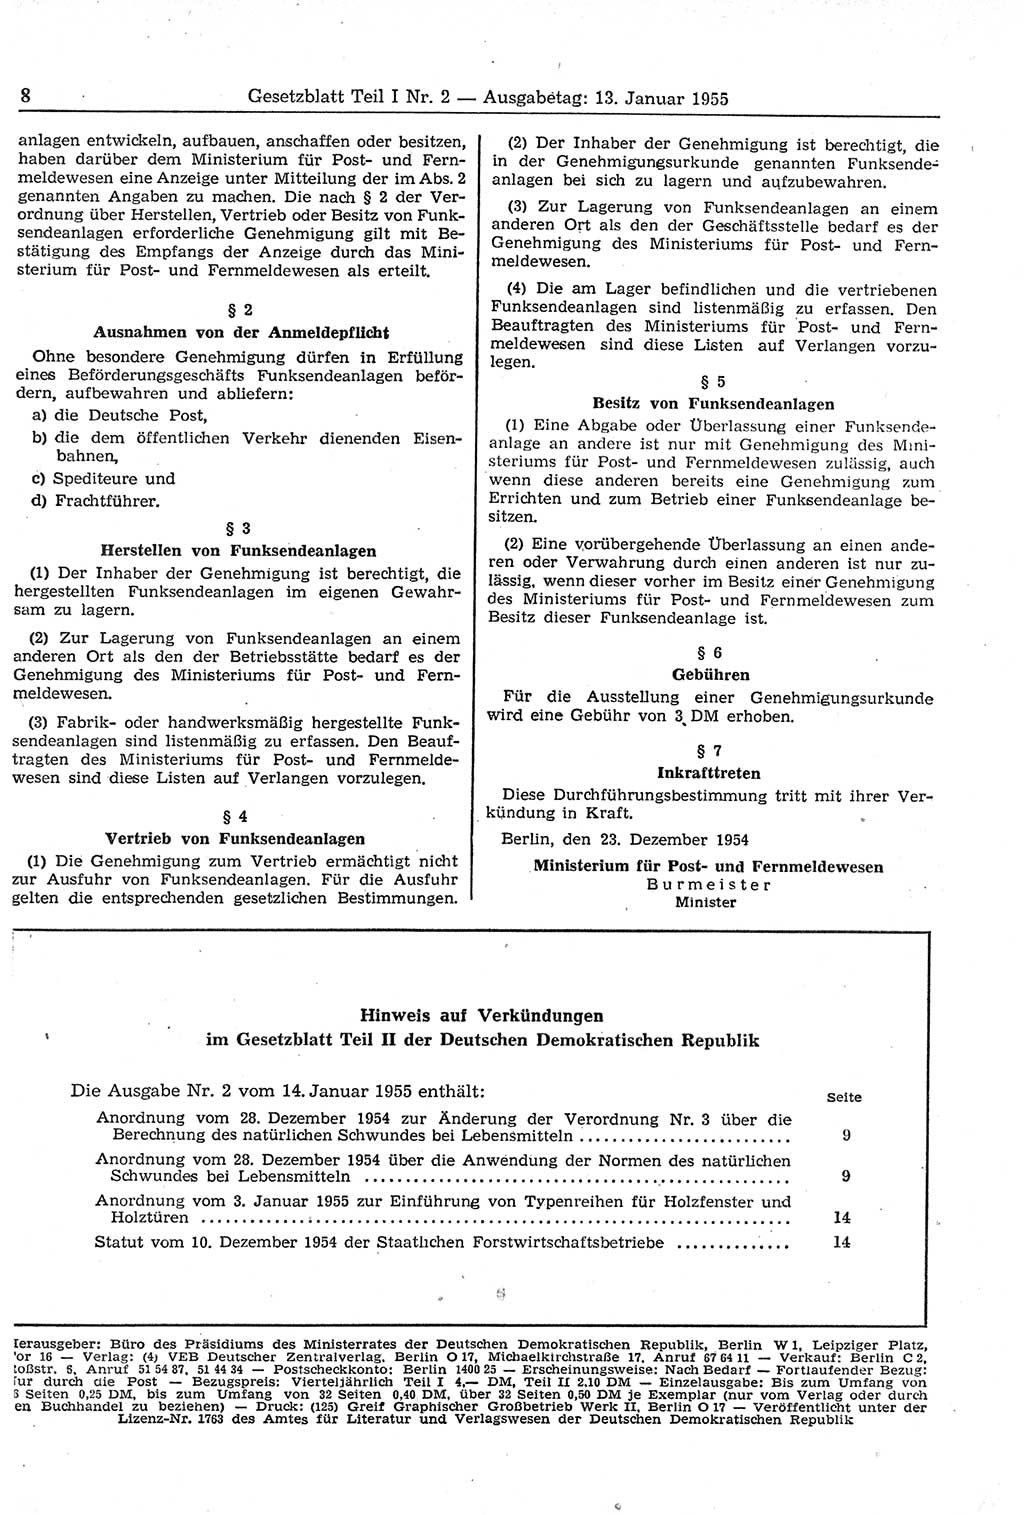 Gesetzblatt (GBl.) der Deutschen Demokratischen Republik (DDR) Teil Ⅰ 1955, Seite 8 (GBl. DDR Ⅰ 1955, S. 8)